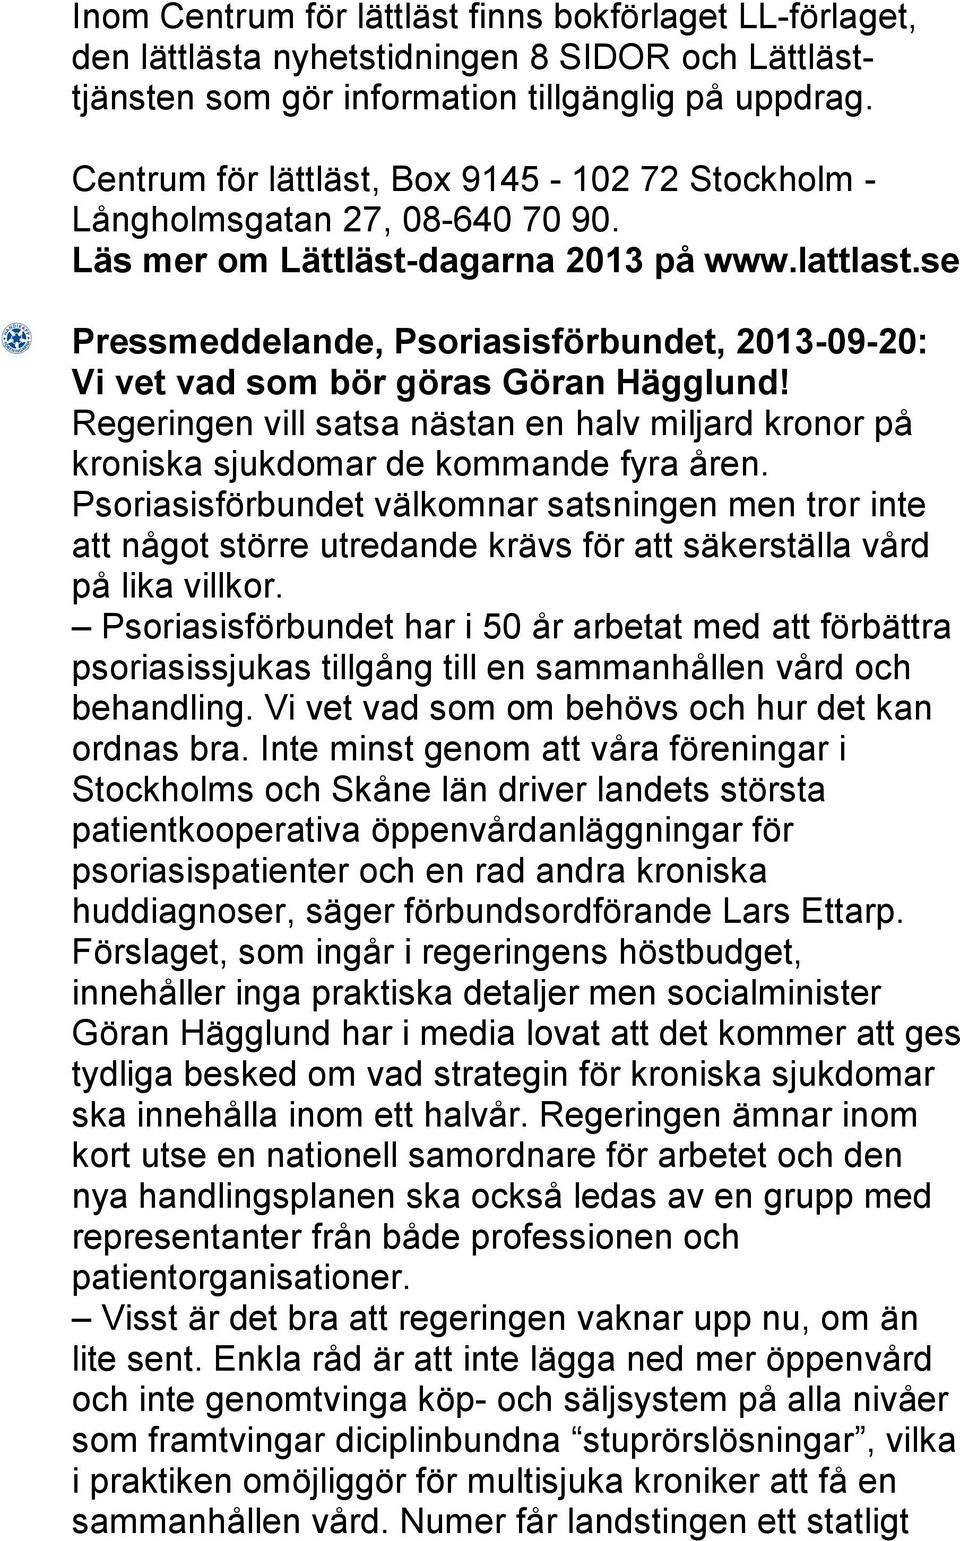 se Pressmeddelande, Psoriasisförbundet, 2013-09-20: Vi vet vad som bör göras Göran Hägglund! Regeringen vill satsa nästan en halv miljard kronor på kroniska sjukdomar de kommande fyra åren.